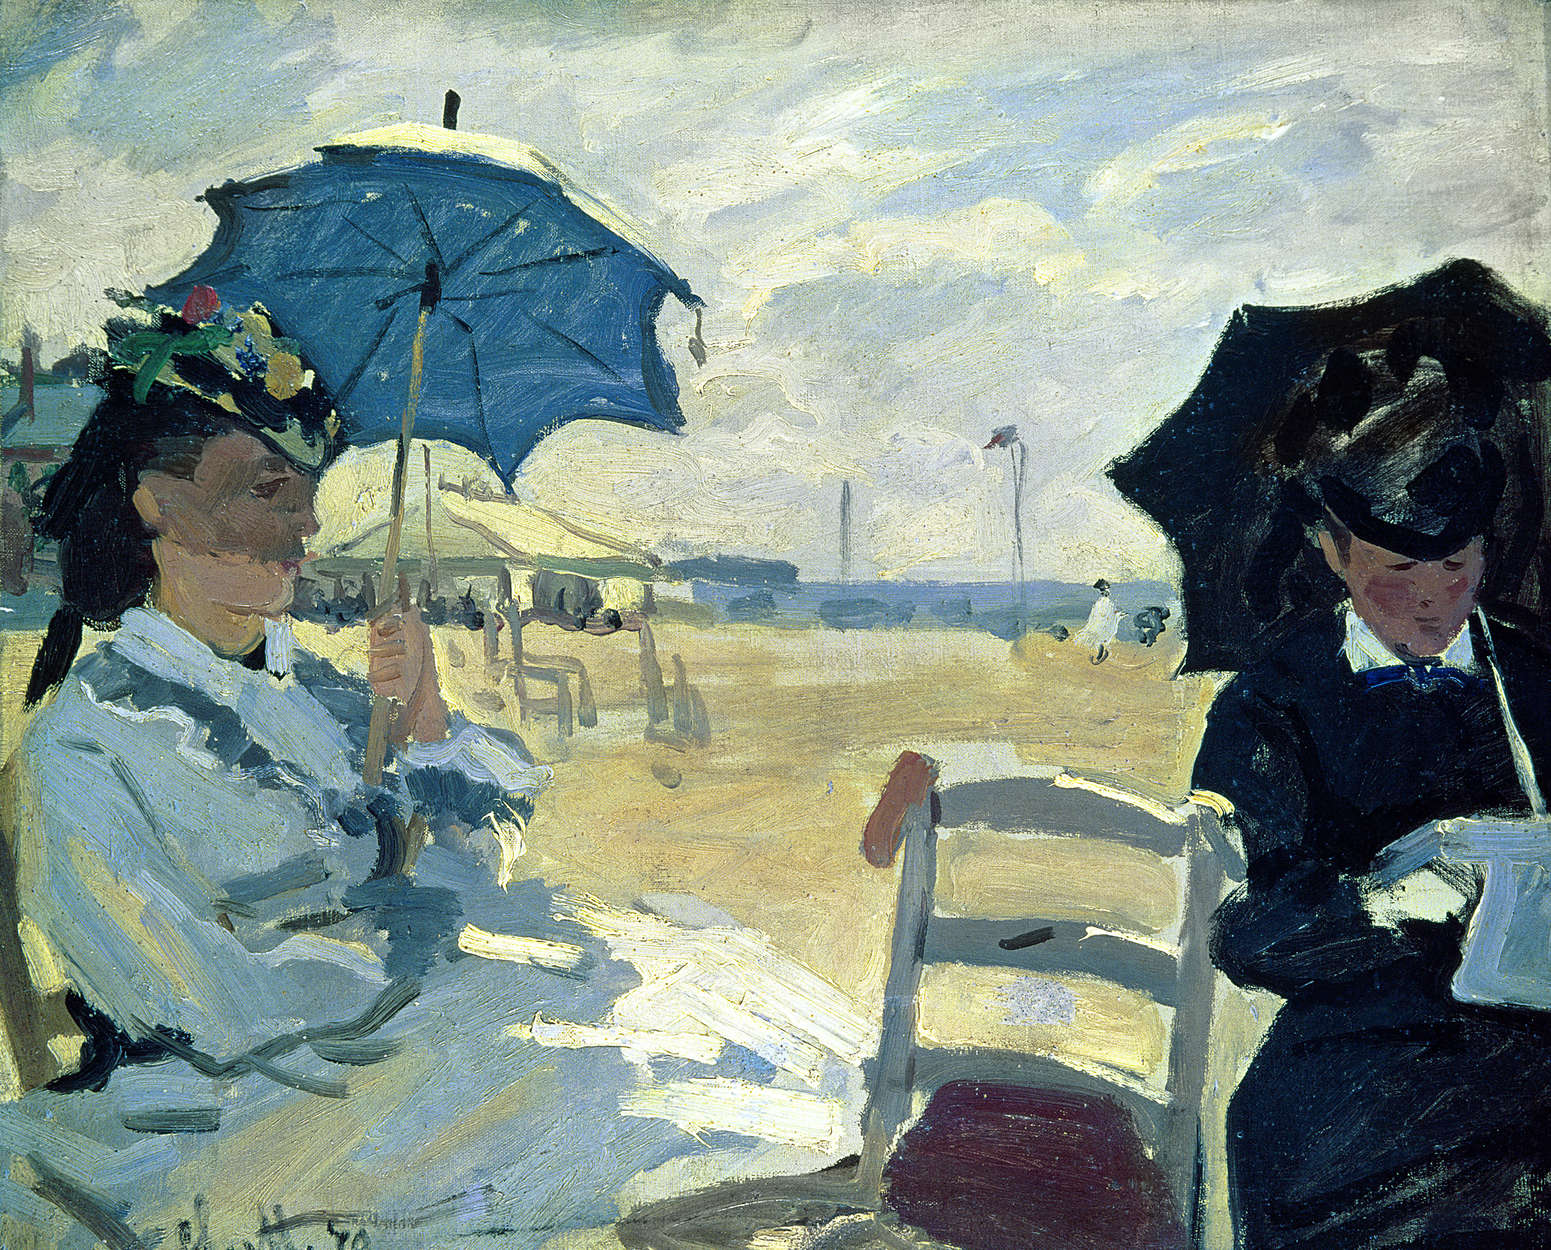             Fotomurali "La spiaggia di Trouville" di Claude Monet
        